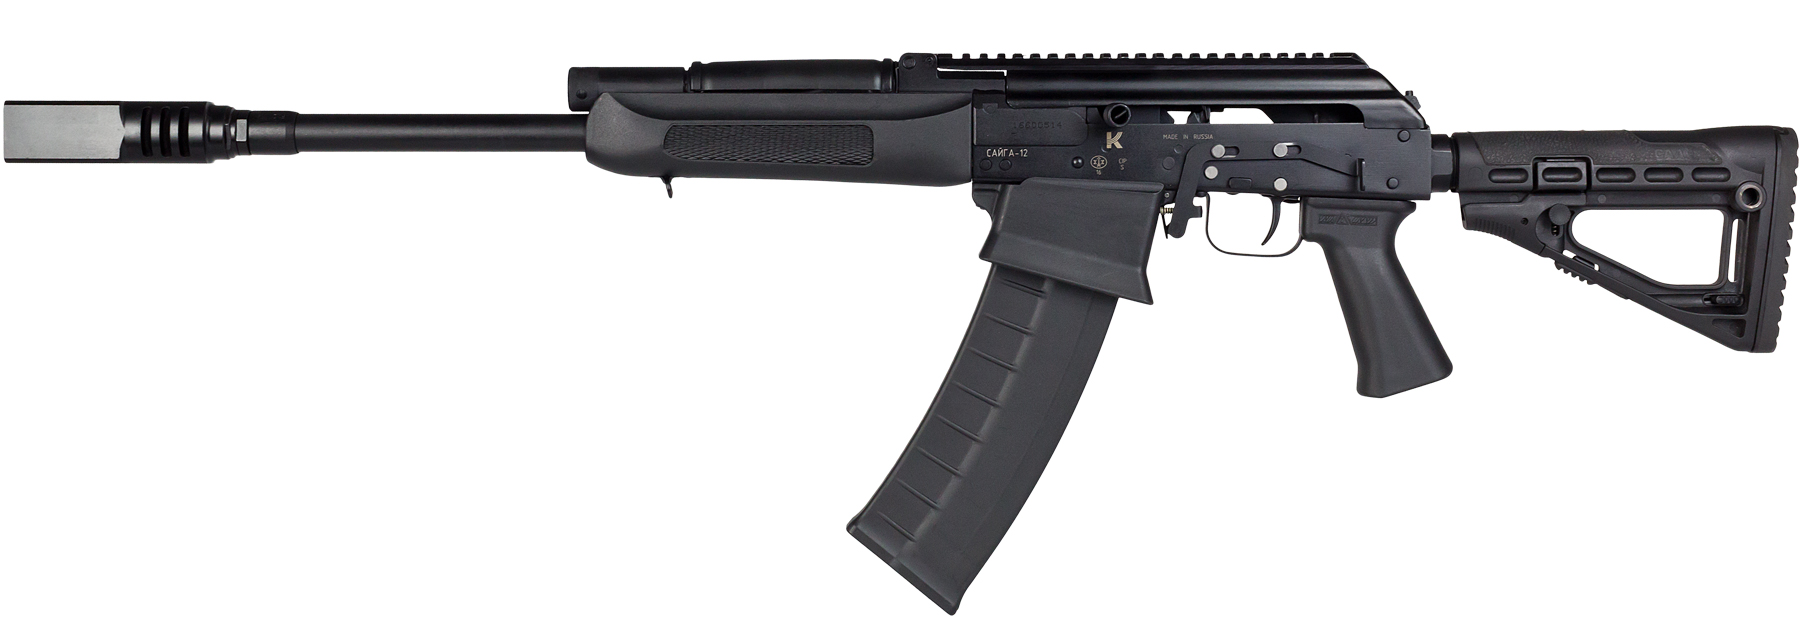 Kalashnikov AK-100 Saiga 12 IPSC